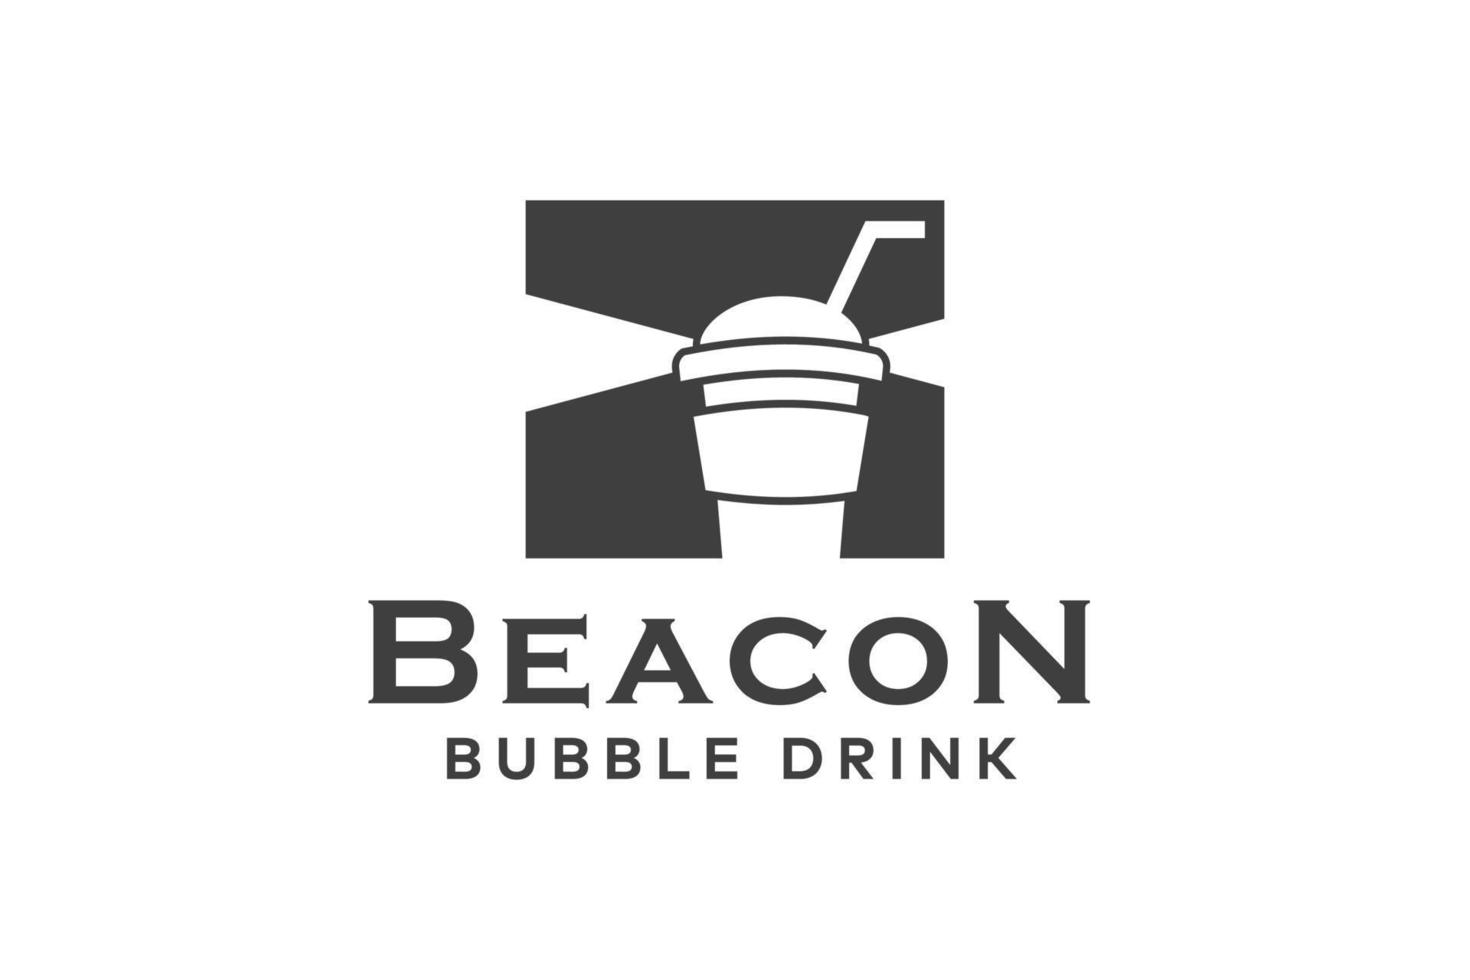 Beacon Bubble Drink Logo Design Template vector